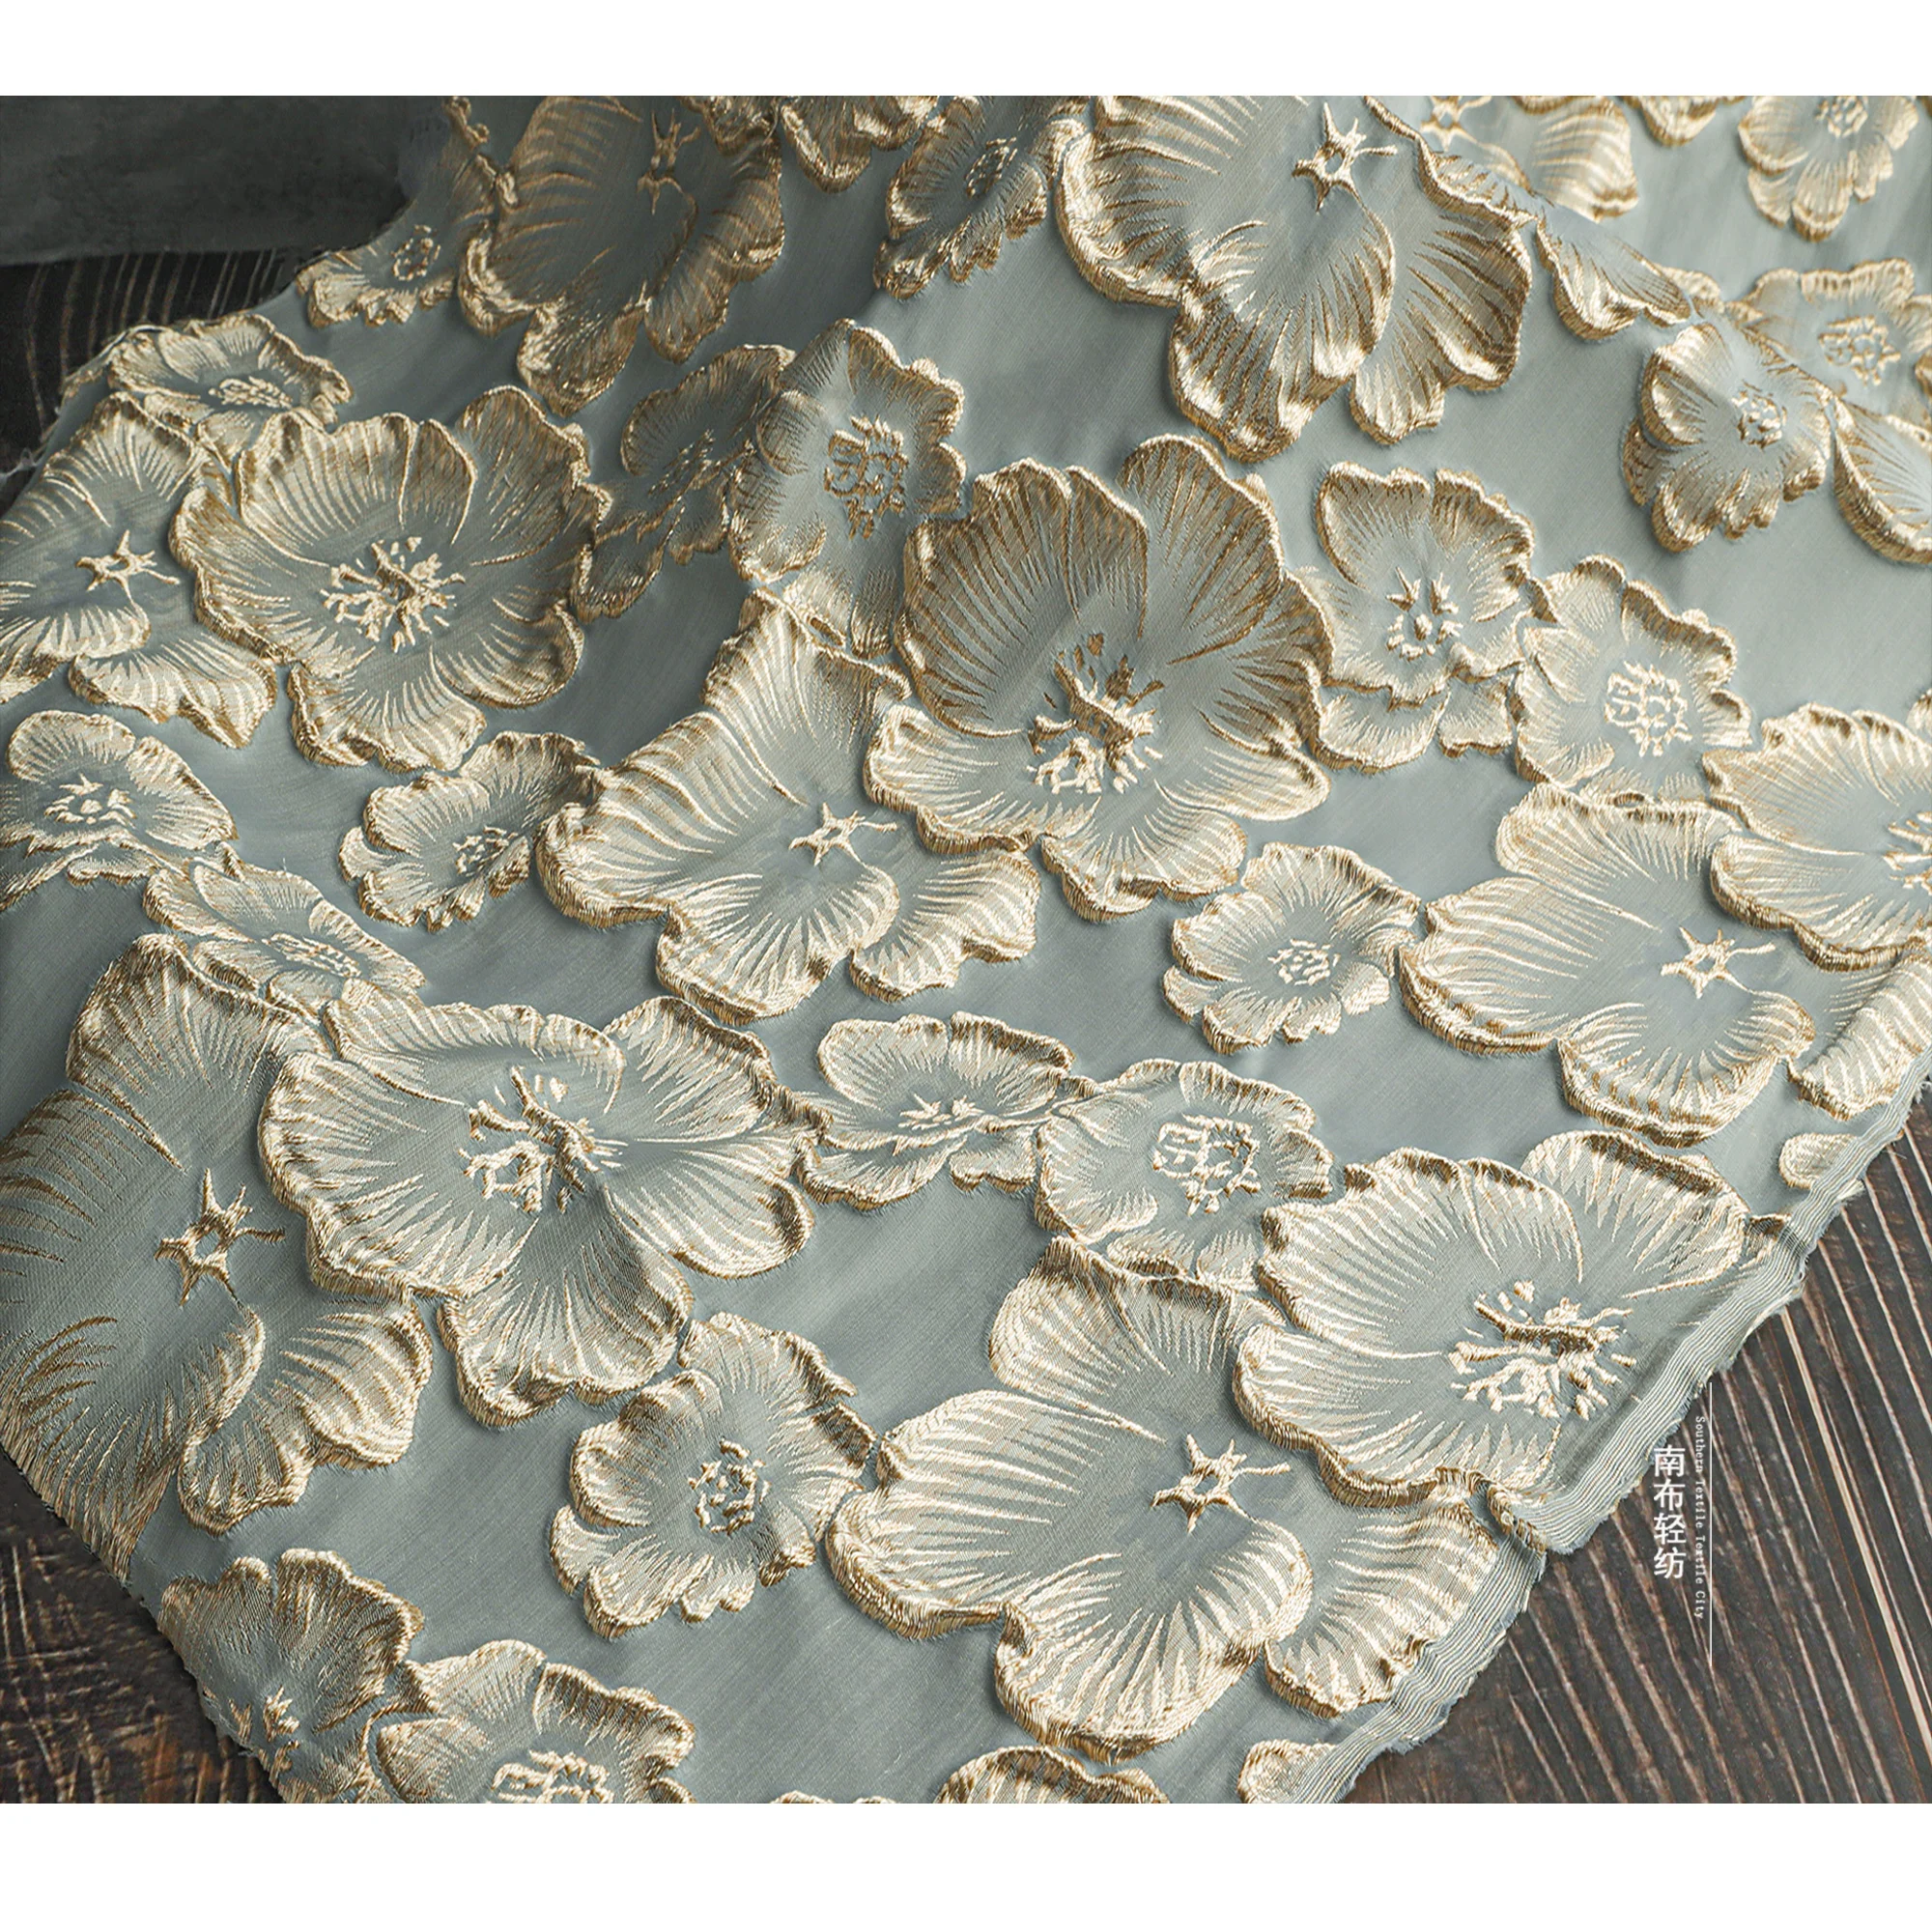 

Золотой шелк цветок сливы 3D жаккардовая ткань рельефная текстура вышивка китайский стиль Cheongsam штора одежда швейный материал